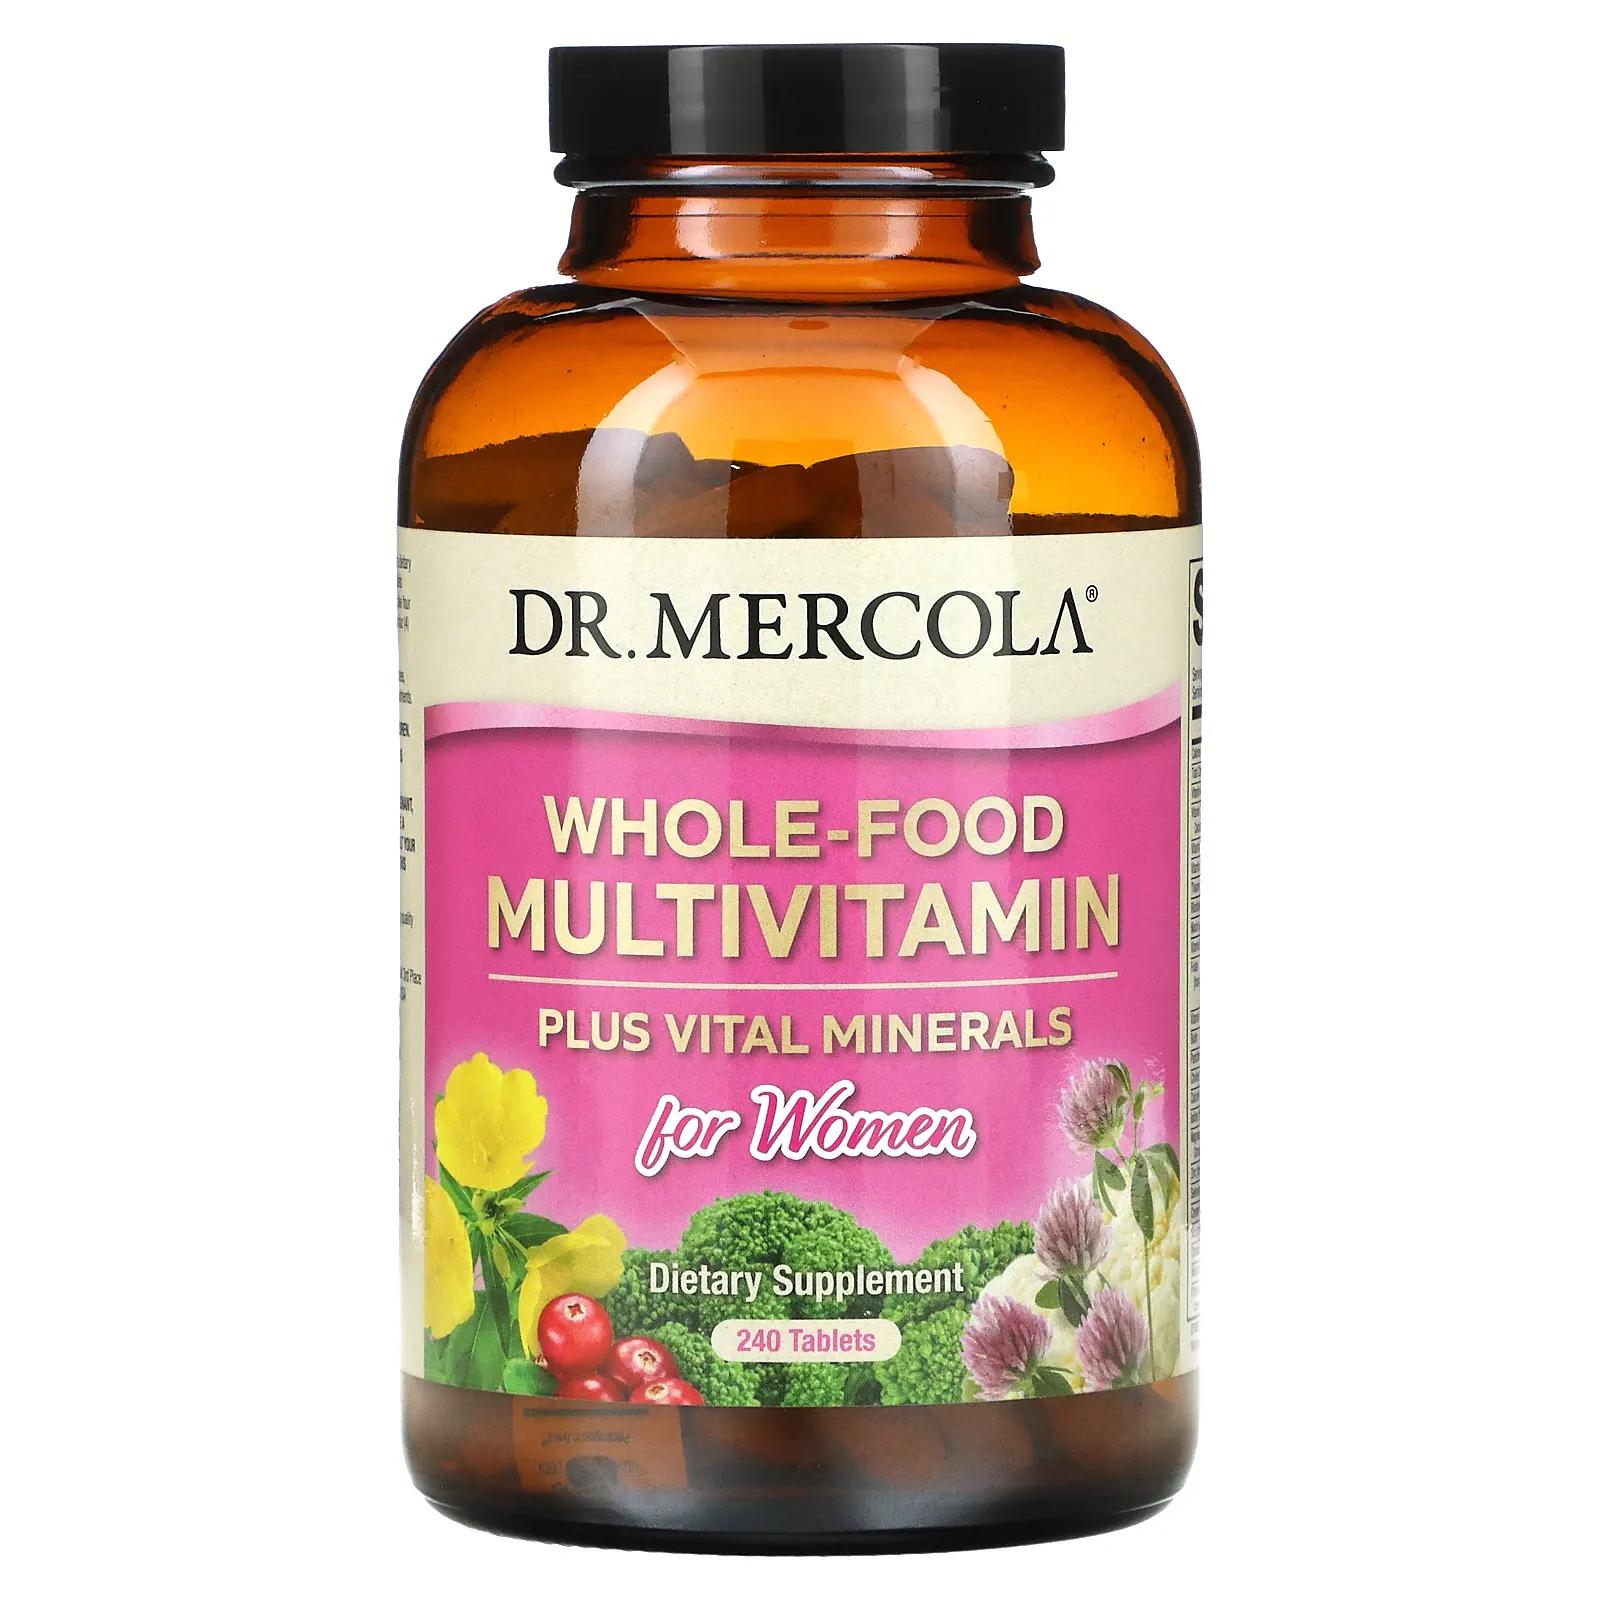 Dr. Mercola Мультивитамины из цельных продуктов плюс необходимые микроэлементы для женщин 240 таблеток dr mercola цельнопищевые мультивитамины плюс важные минералы 240 таблеток